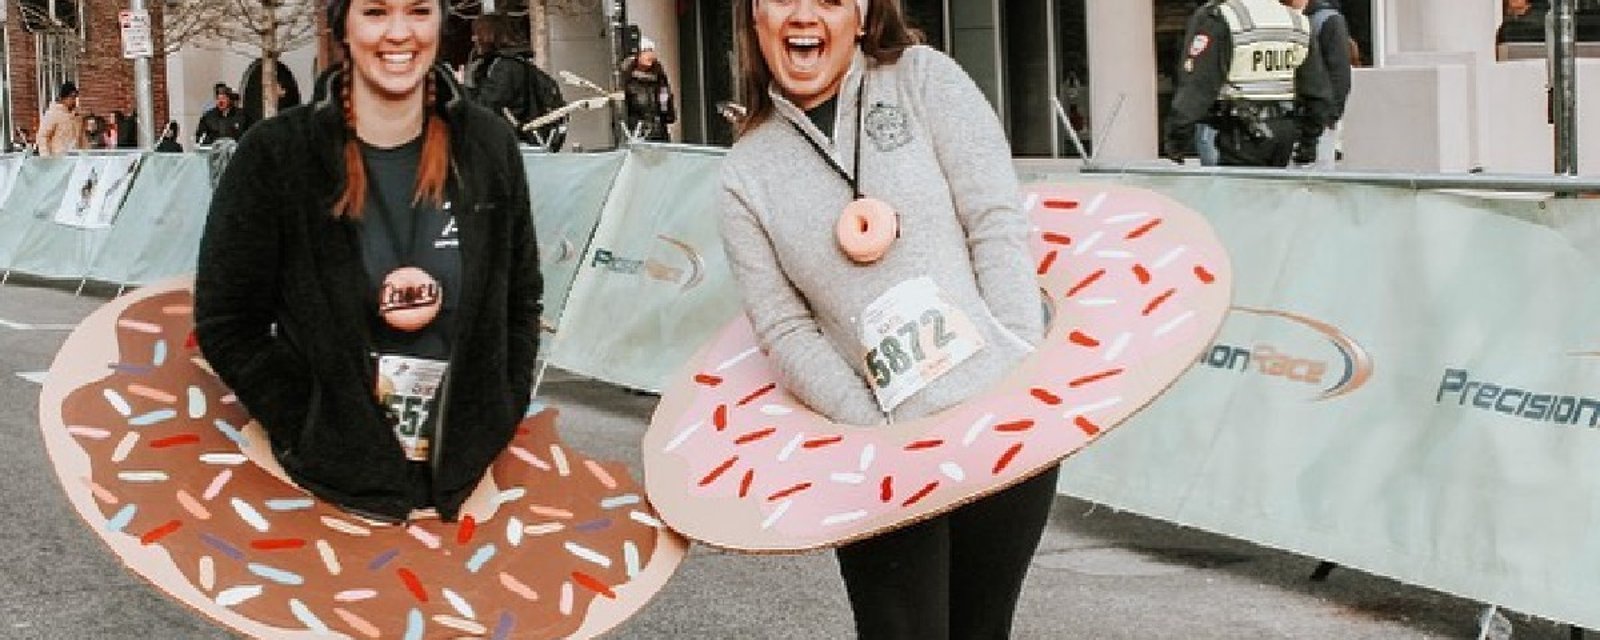 Il existe une course de 8 km où vous devez manger 12 beignes Krispy Kreme en une heure